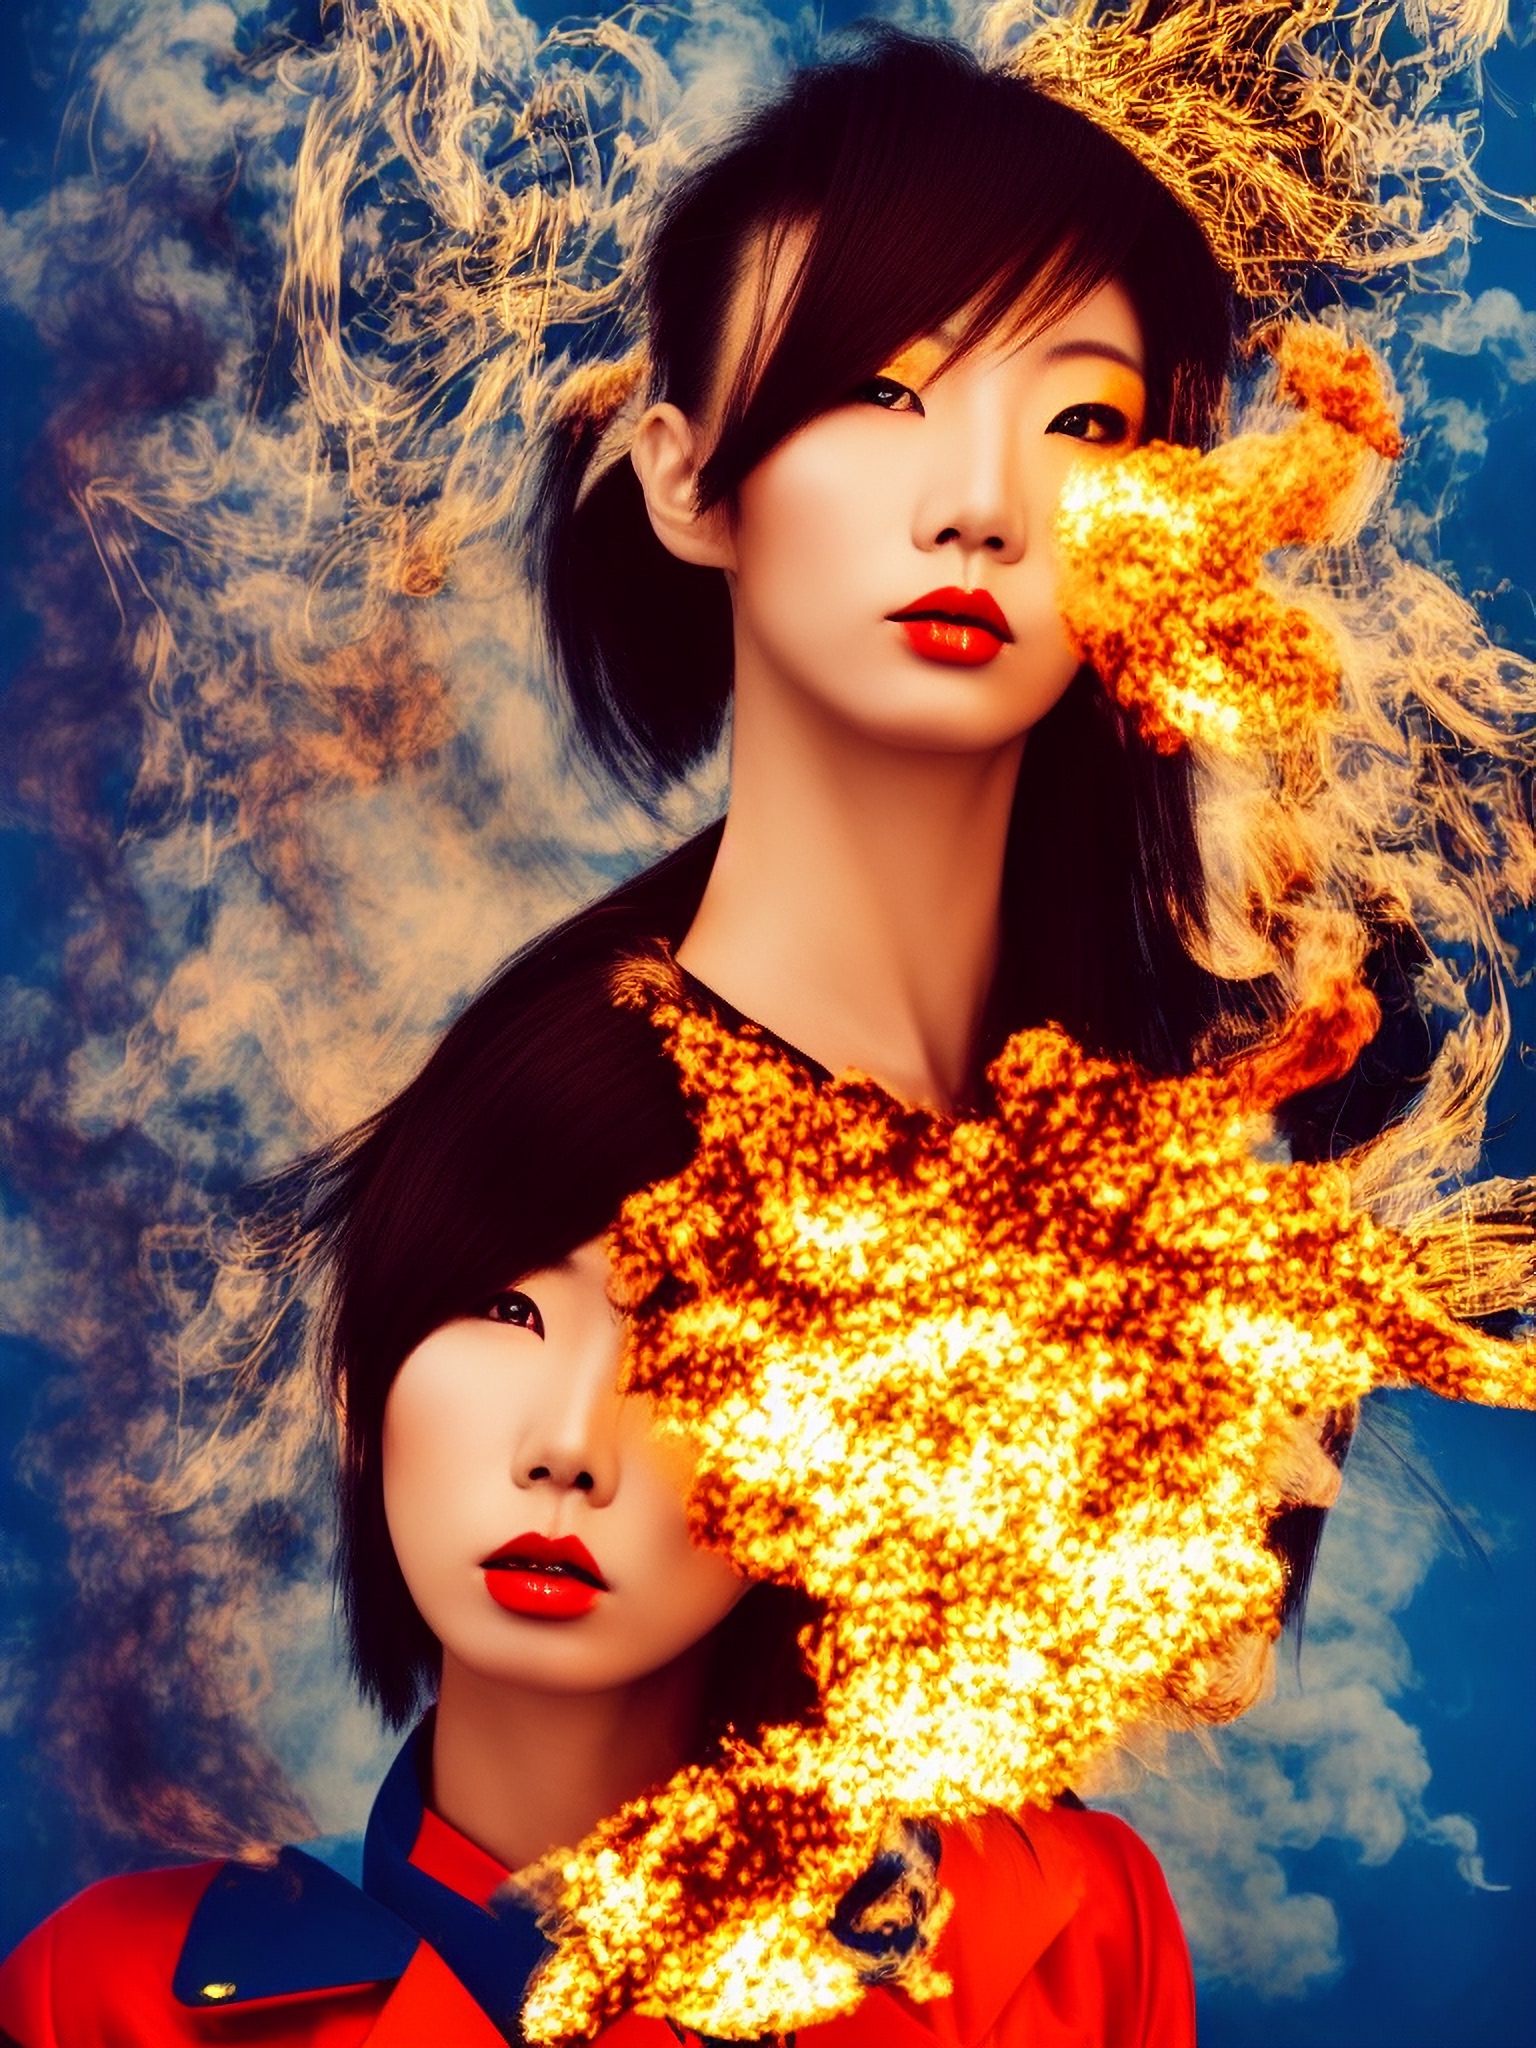 japanese-models-flames-fire-portrait